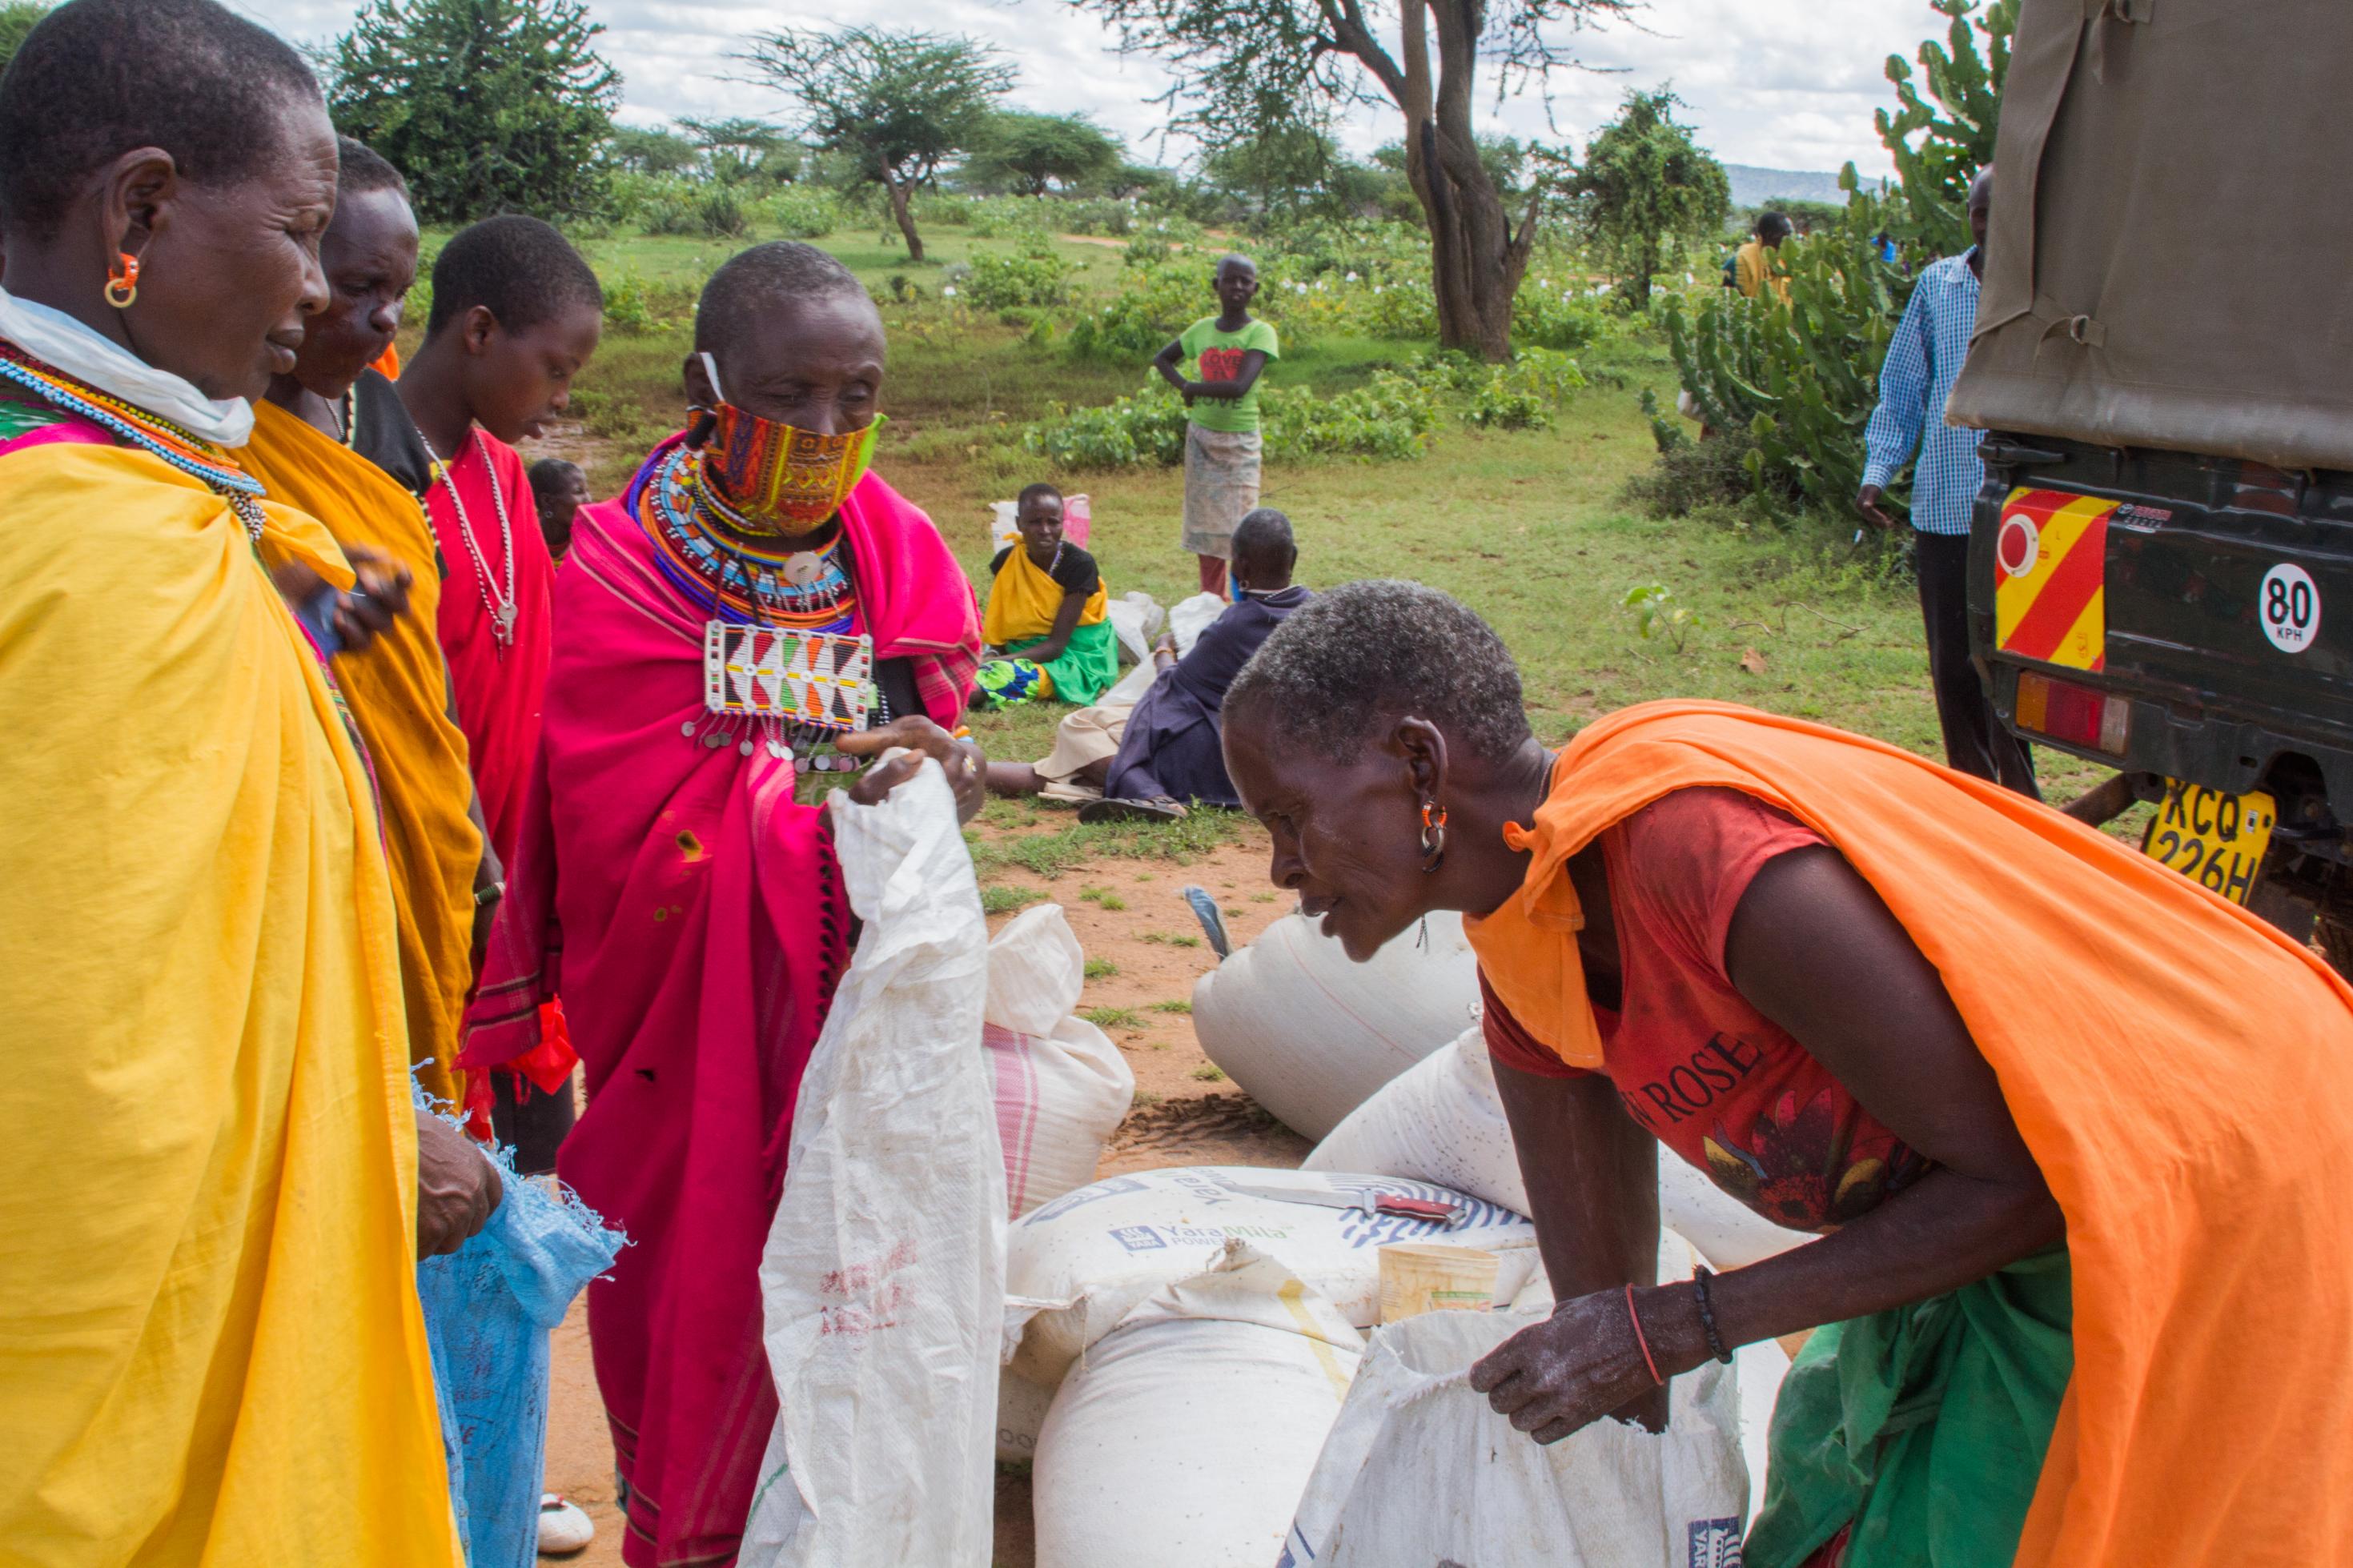 In den Nachbardörfern von Loisaba werden Lebensmittel verteilt, die das Schutzgebiet bezahlt hat. Maasai-Frauen sind mit ihrem traditionellen Schmuck gekommen, einige tragen eine Gesichtsmaske. Sie haben große Säcke für die Lebensmittel dabei, kriegen aber nur einen kleinen Maßbecher voll, weil mehr nicht da ist.